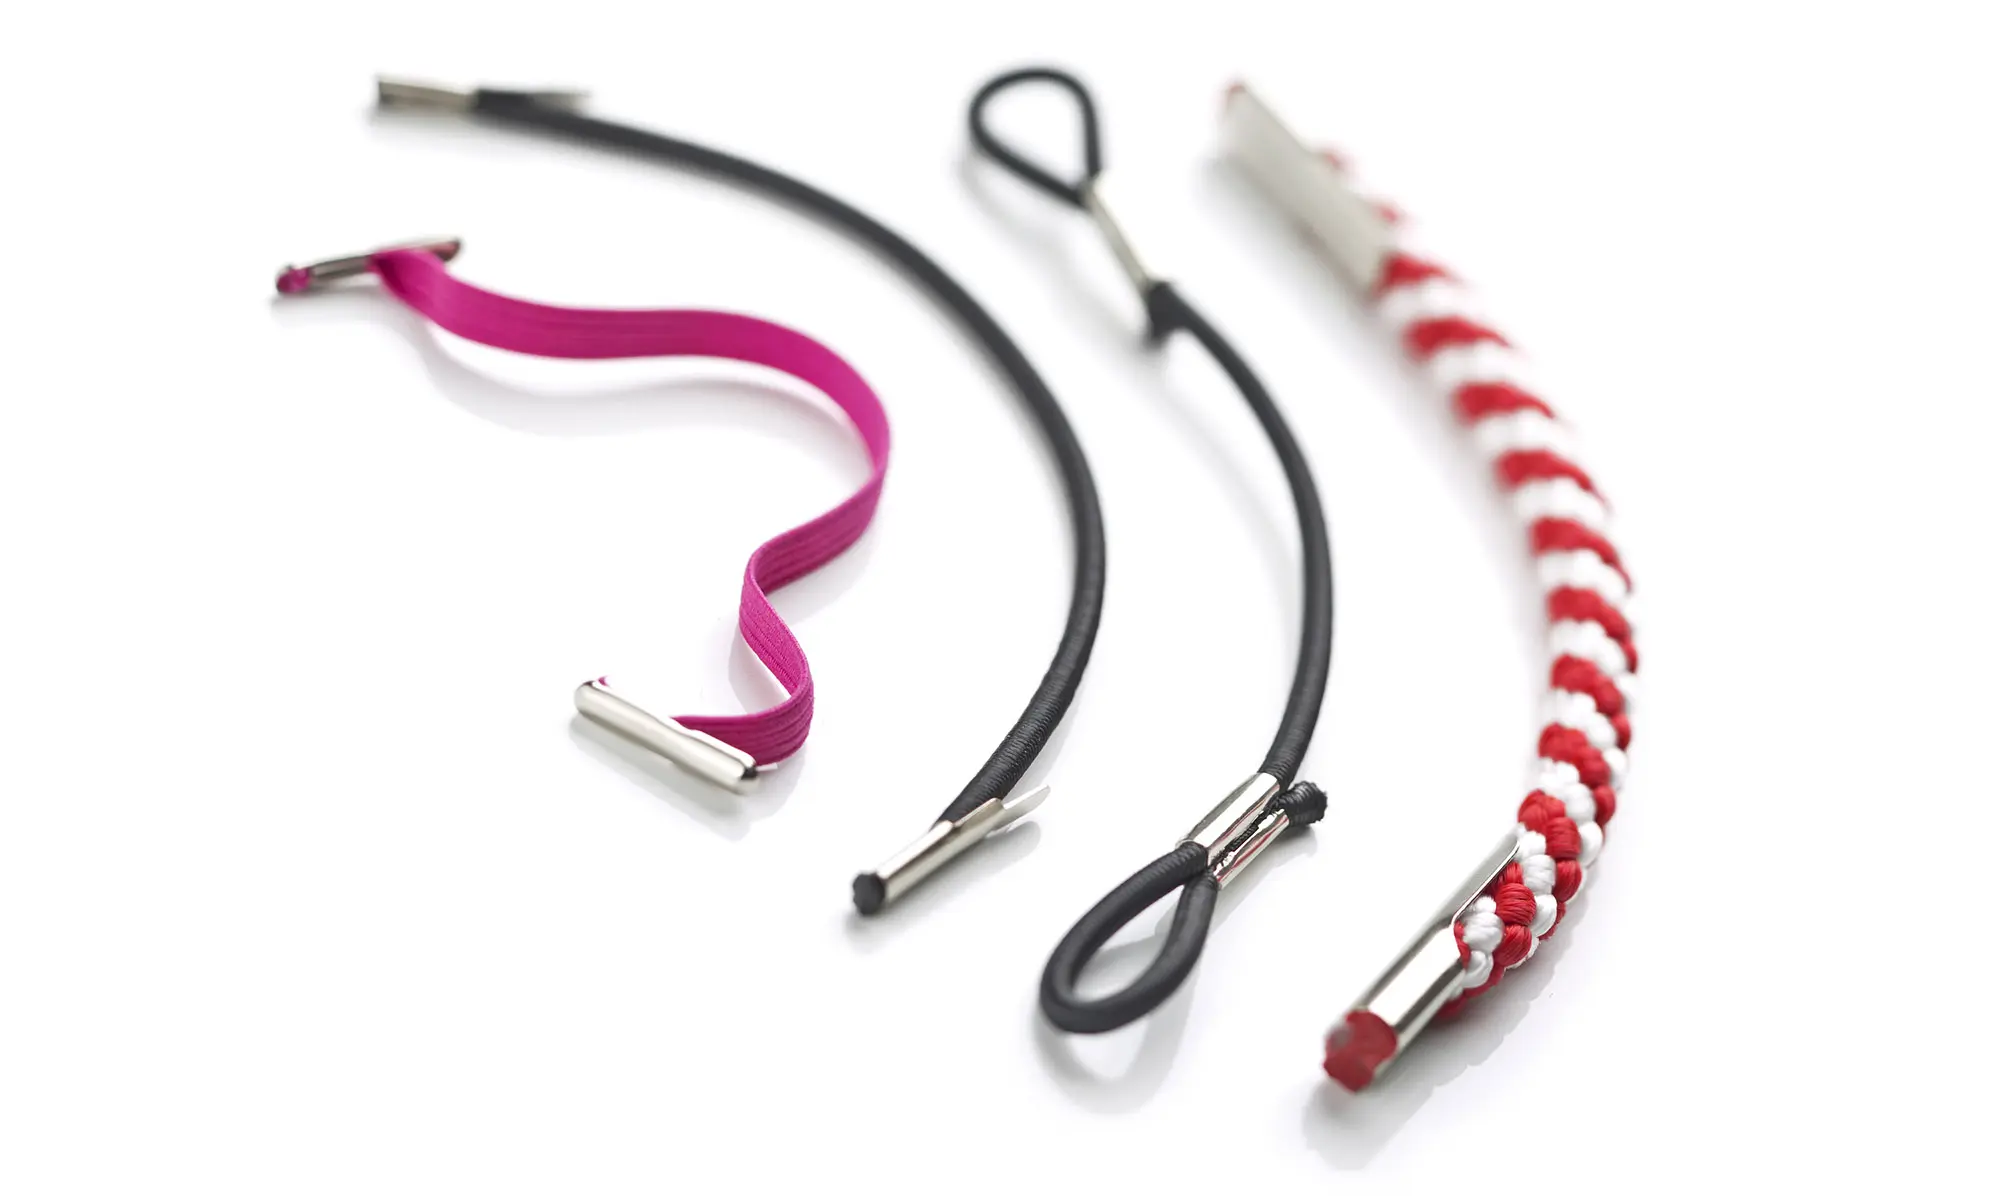 Produktfoto von unterschiedlichen, elastischen und geflochtenen Bändern und Kordeln, mit Befestigungselementen aus Metall, vor weißem Hintergrund